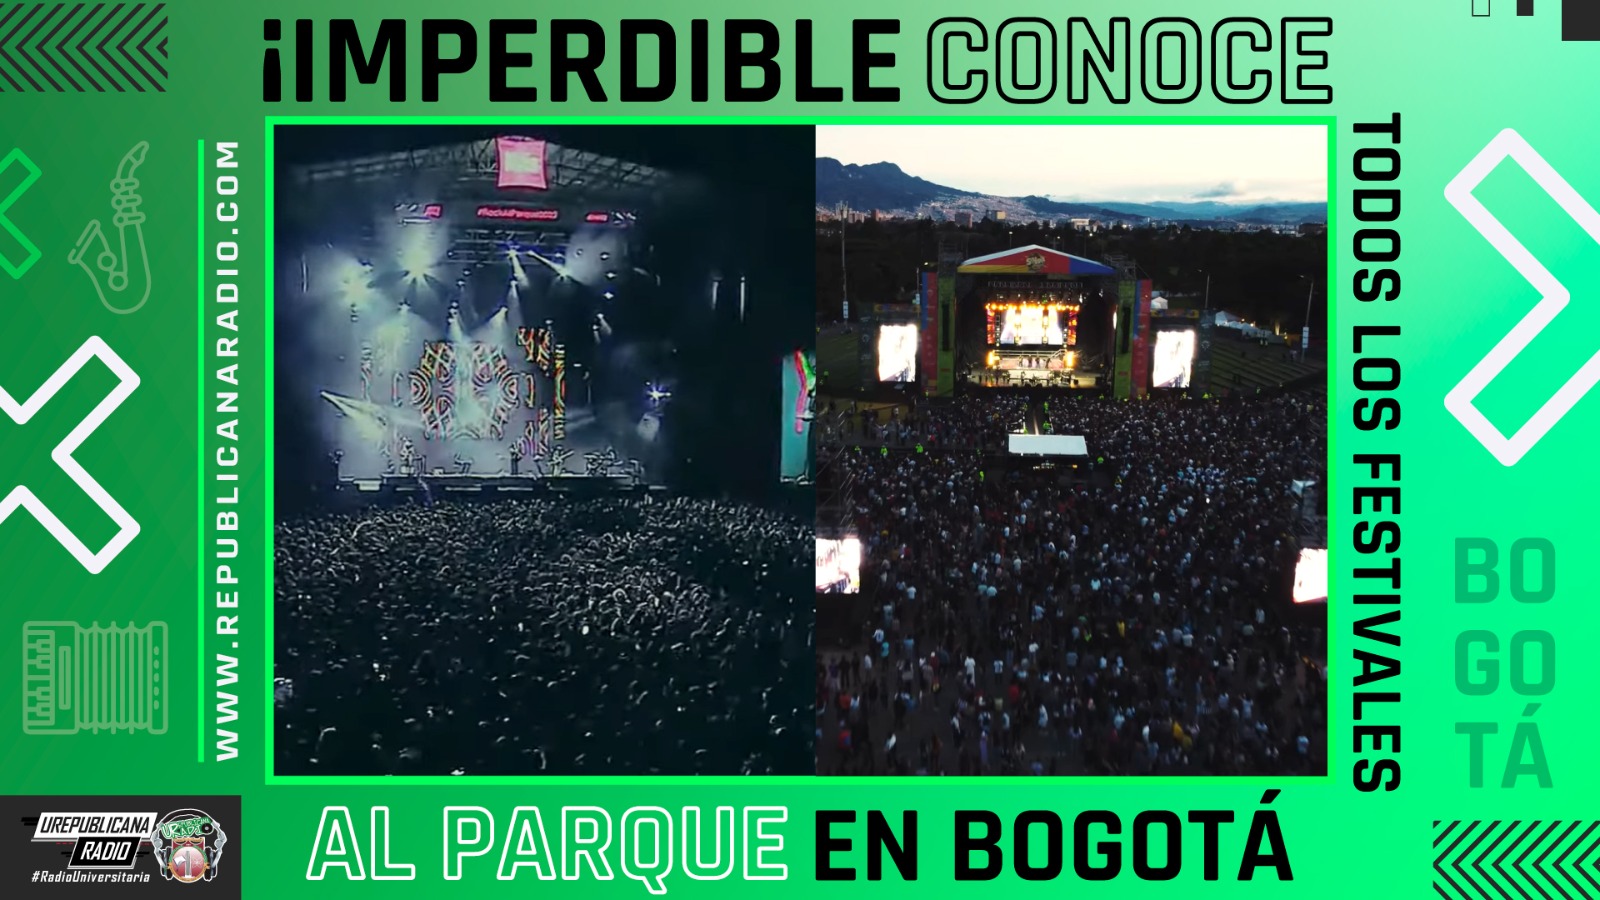 ¡Imperdible!  Conoce todos los festivales al parque en Bogotá